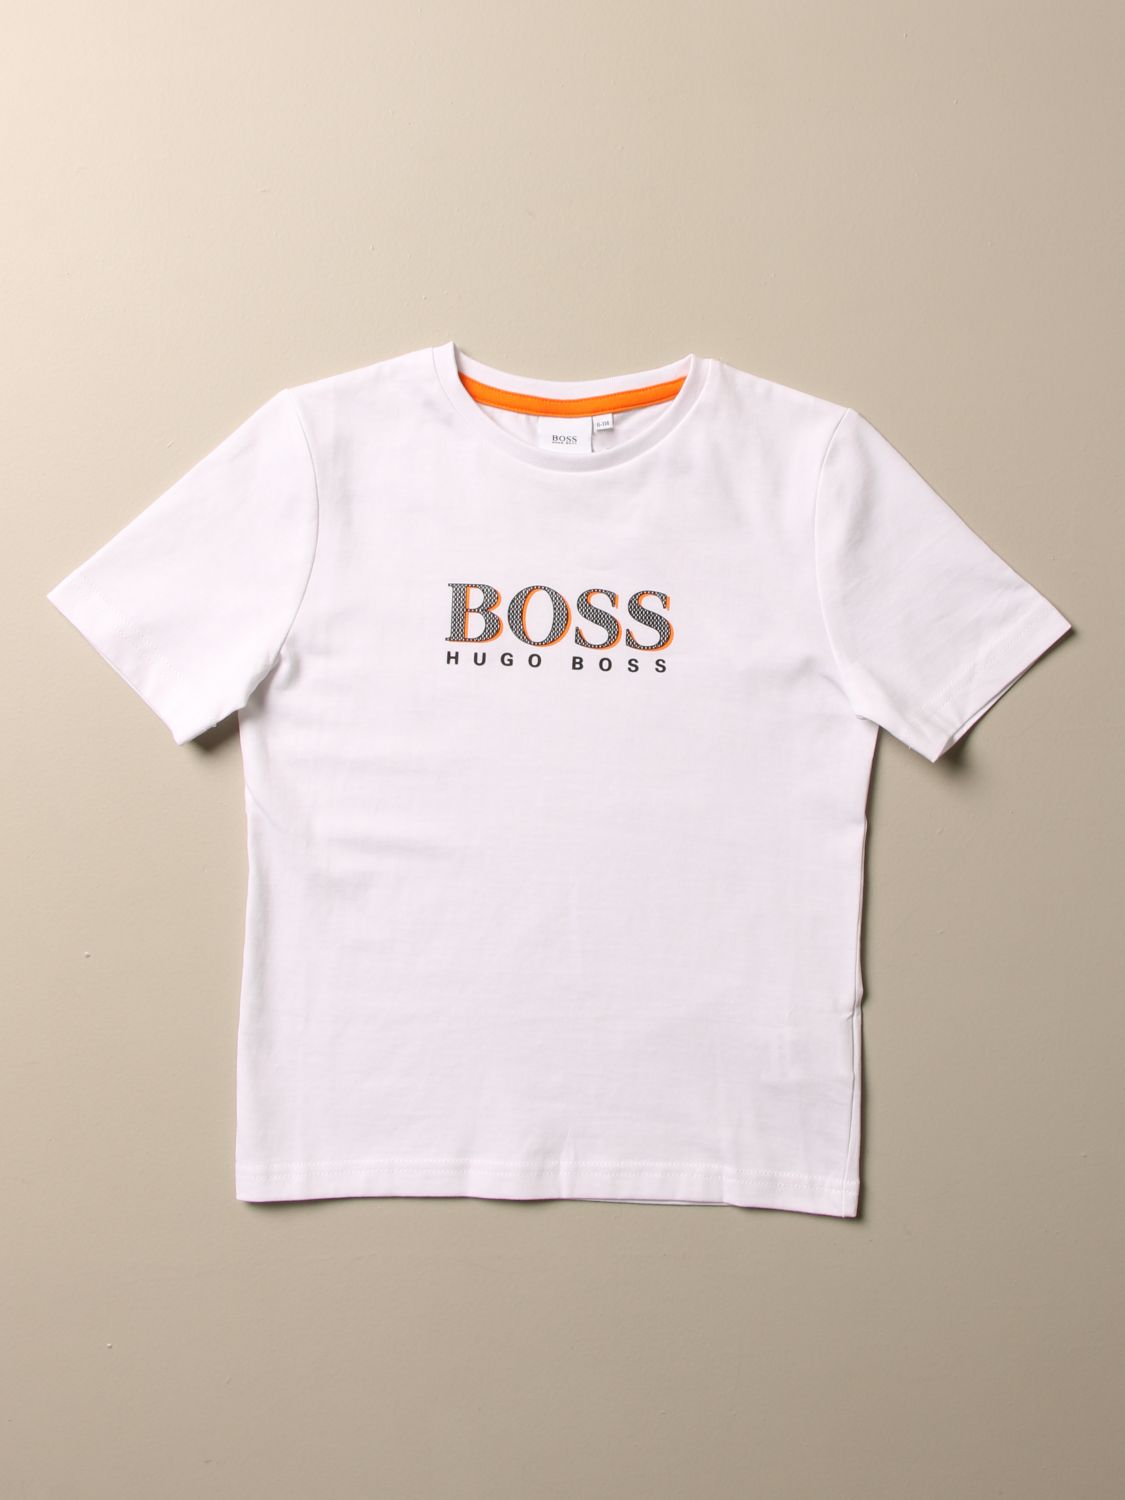 children's hugo boss t shirts